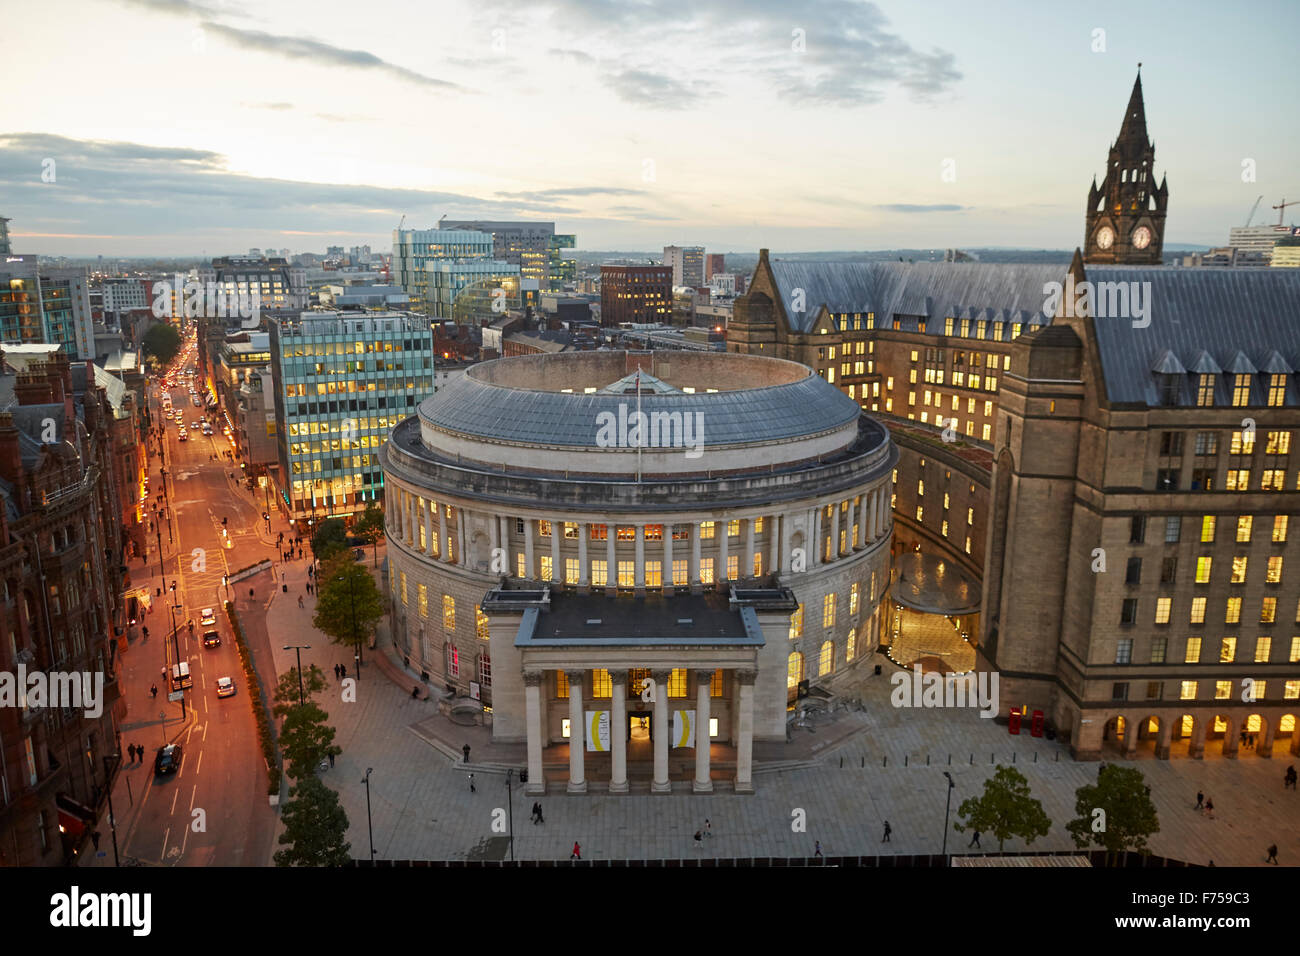 Manchester-Skyline zeigen sich die Dächer und central Library und dem Rathaus Erweiterung Turm Lichtschacht Strahlen durch die Wolken Stockfoto